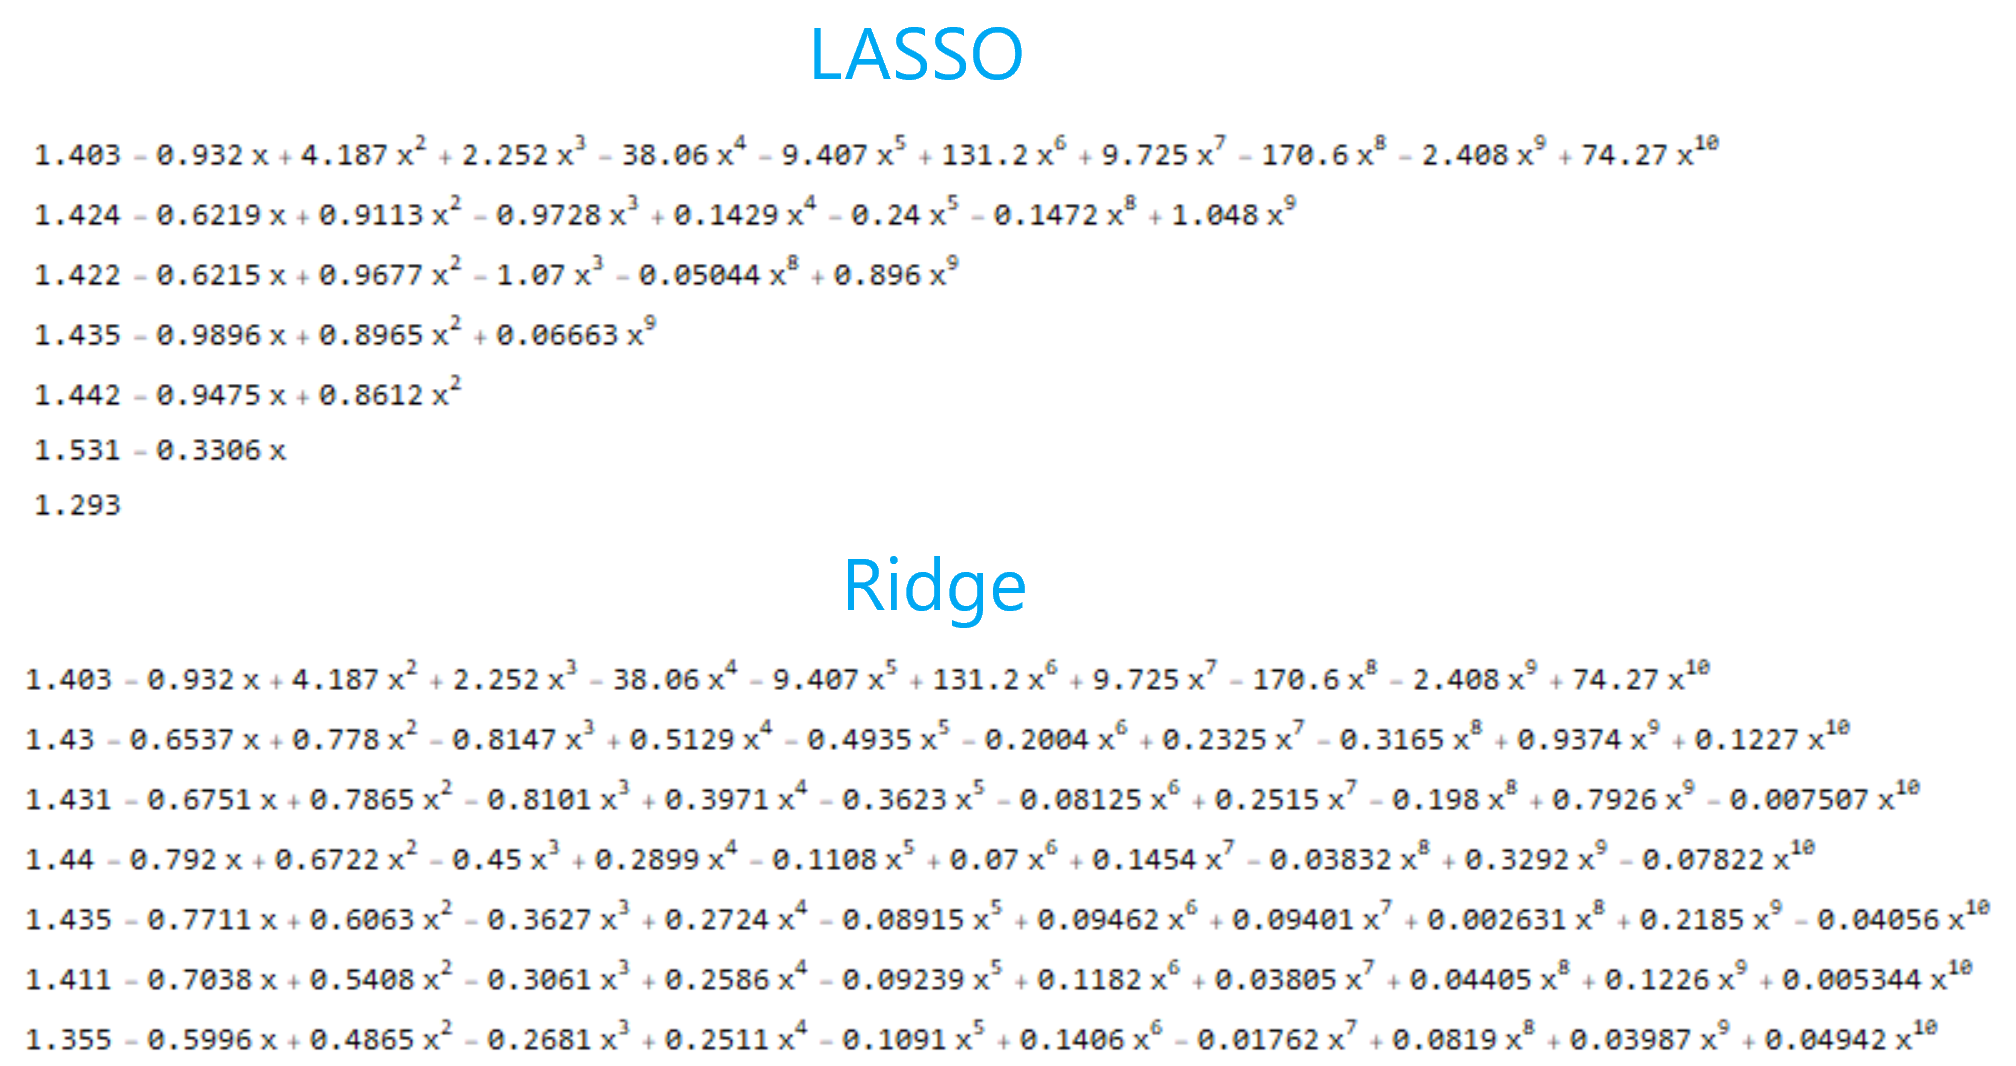 LASSO vs ridge regularization